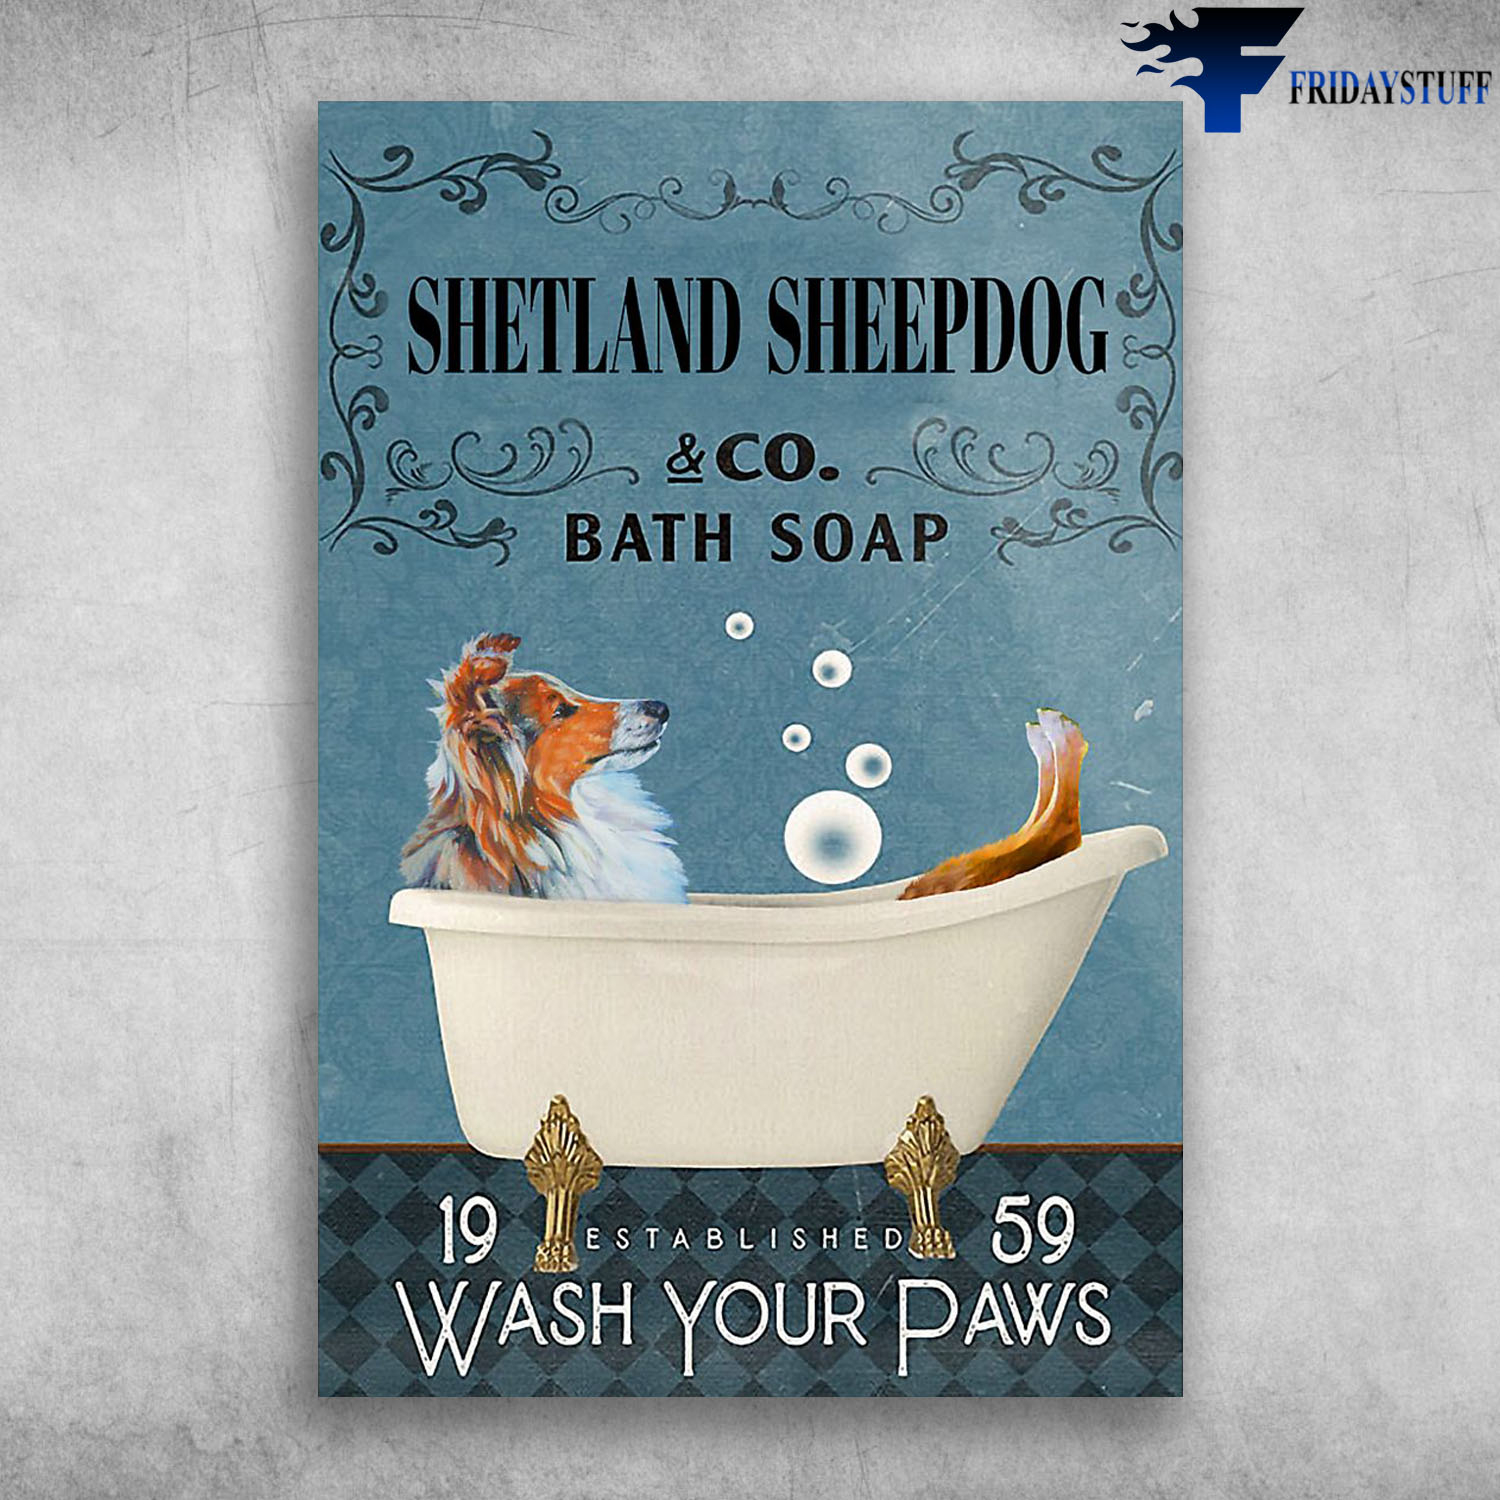 Shetland Sheepdog In Bathtub Bath Soap Established Wash Your Paws